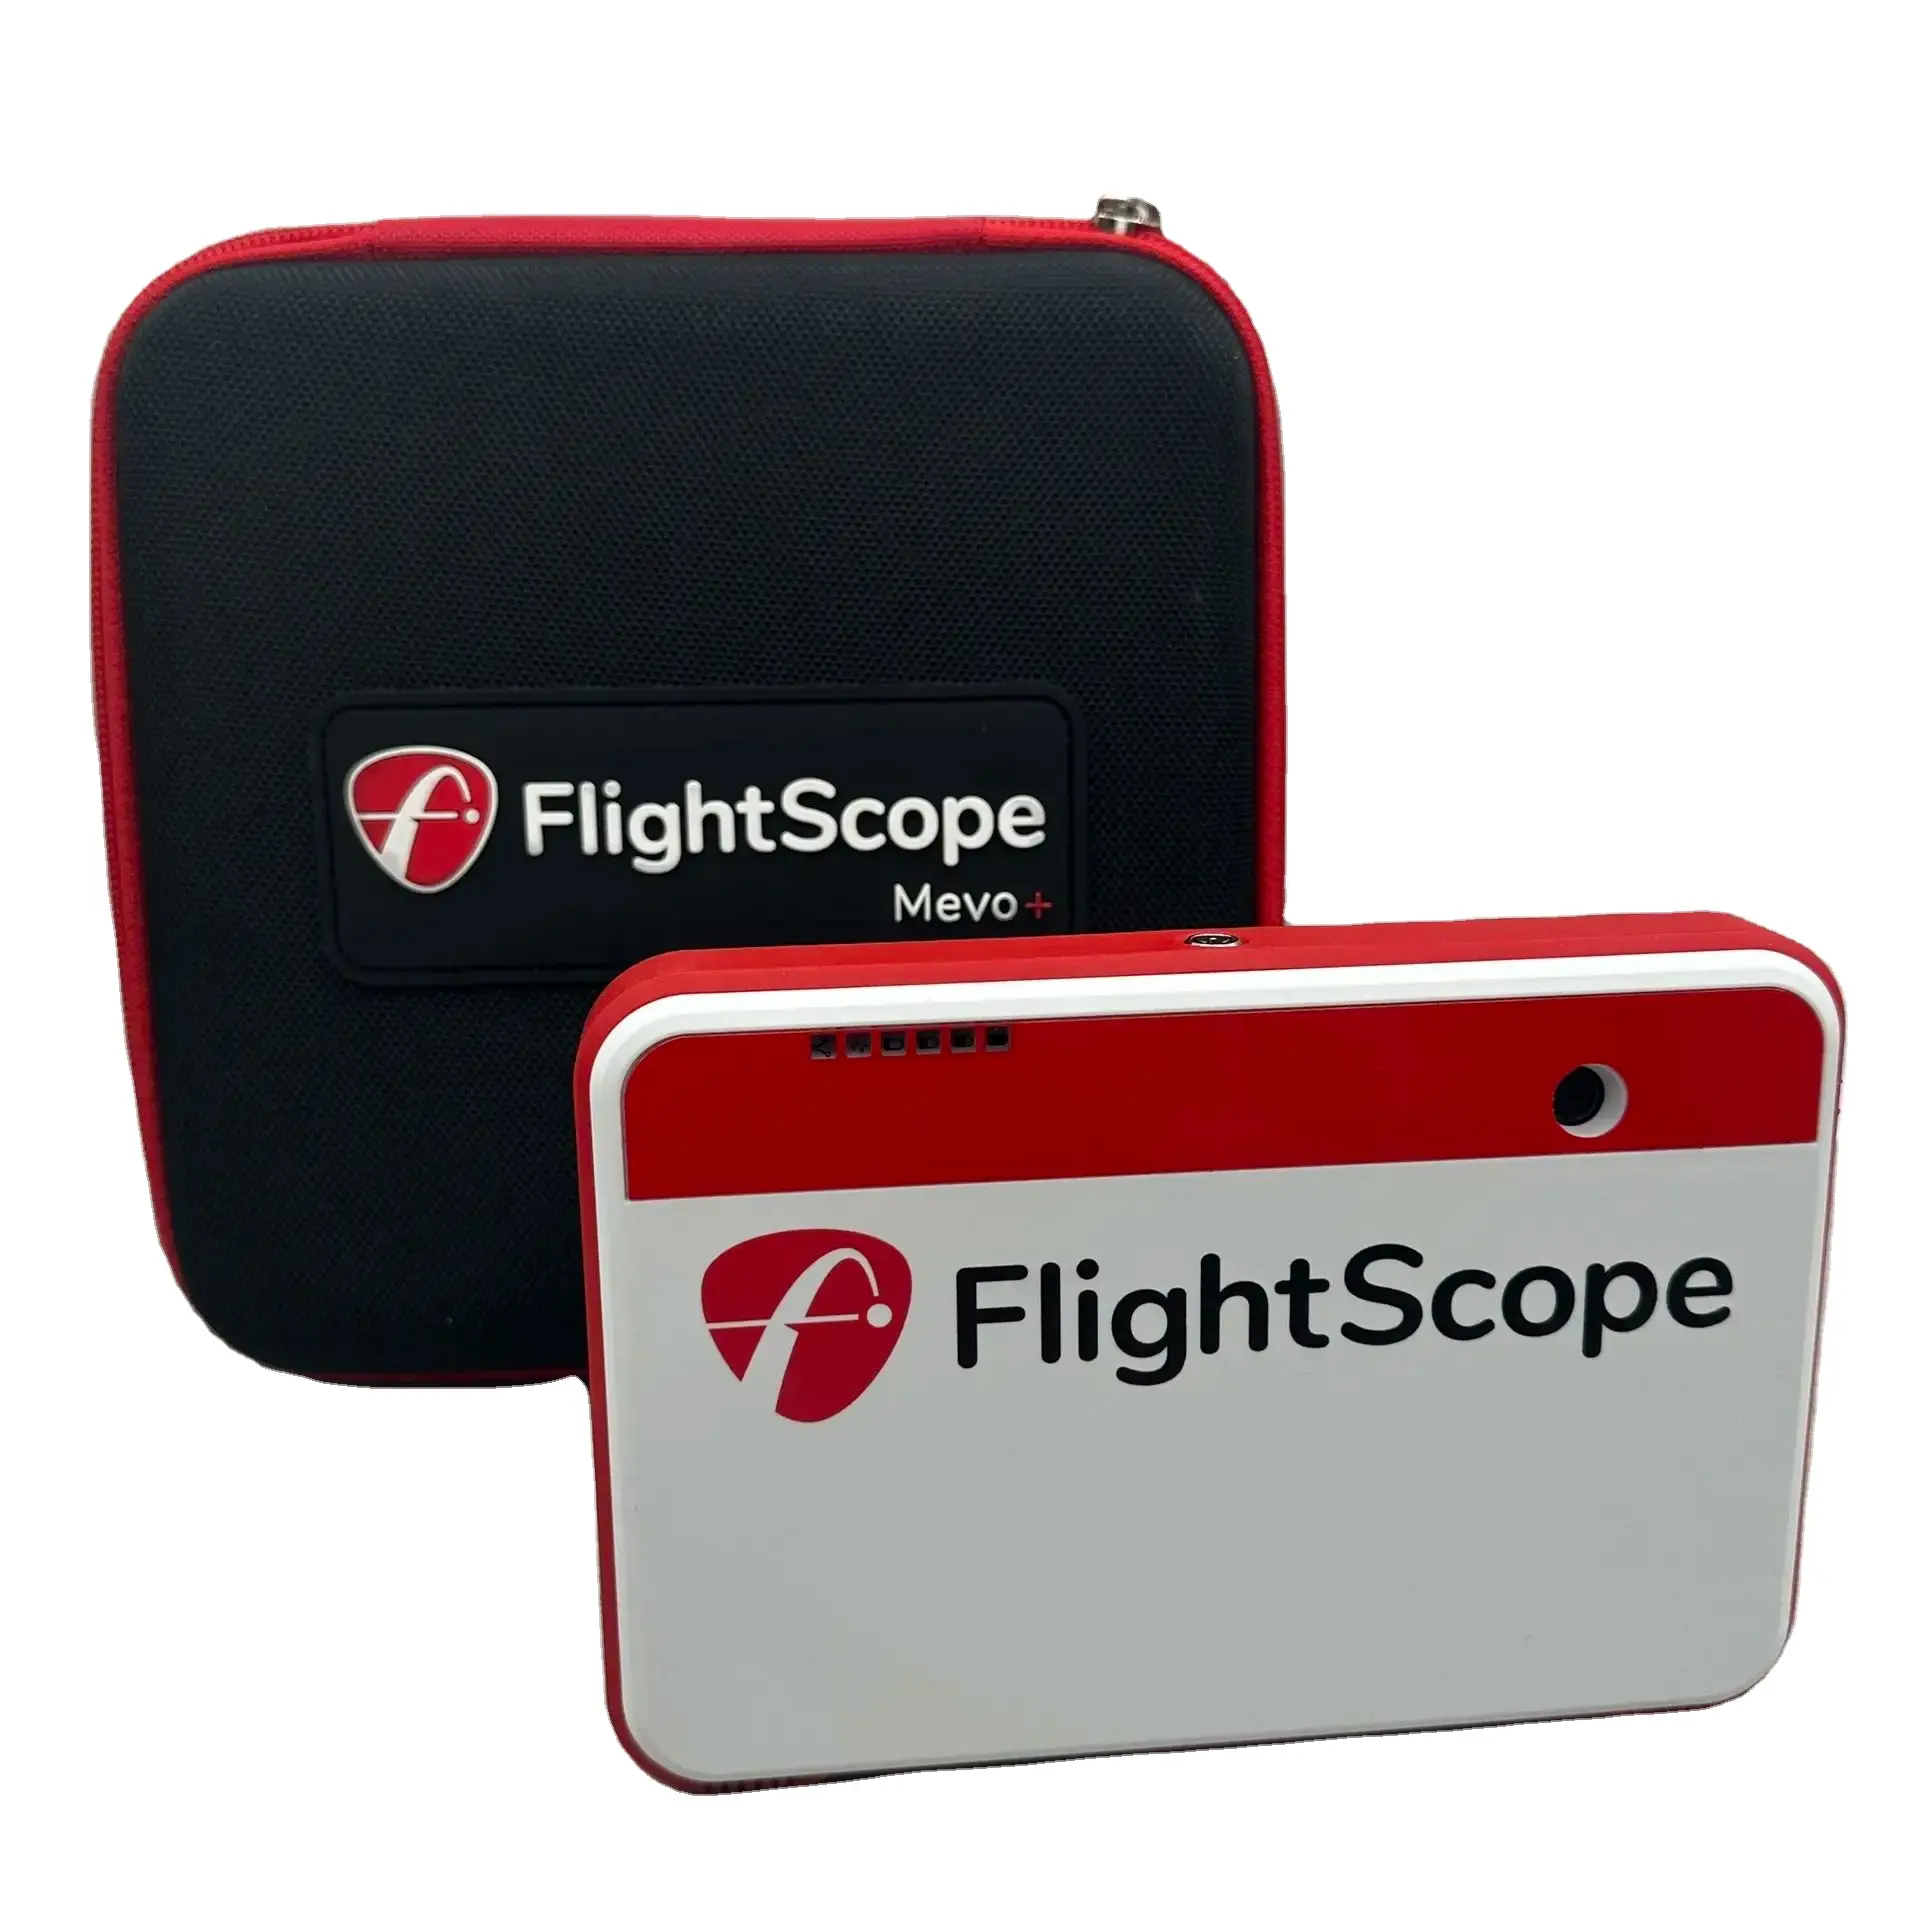 Entrega a puerta para FlightScope Mevo + Golf Simulator Launch Monitor con garantía con envío gratis